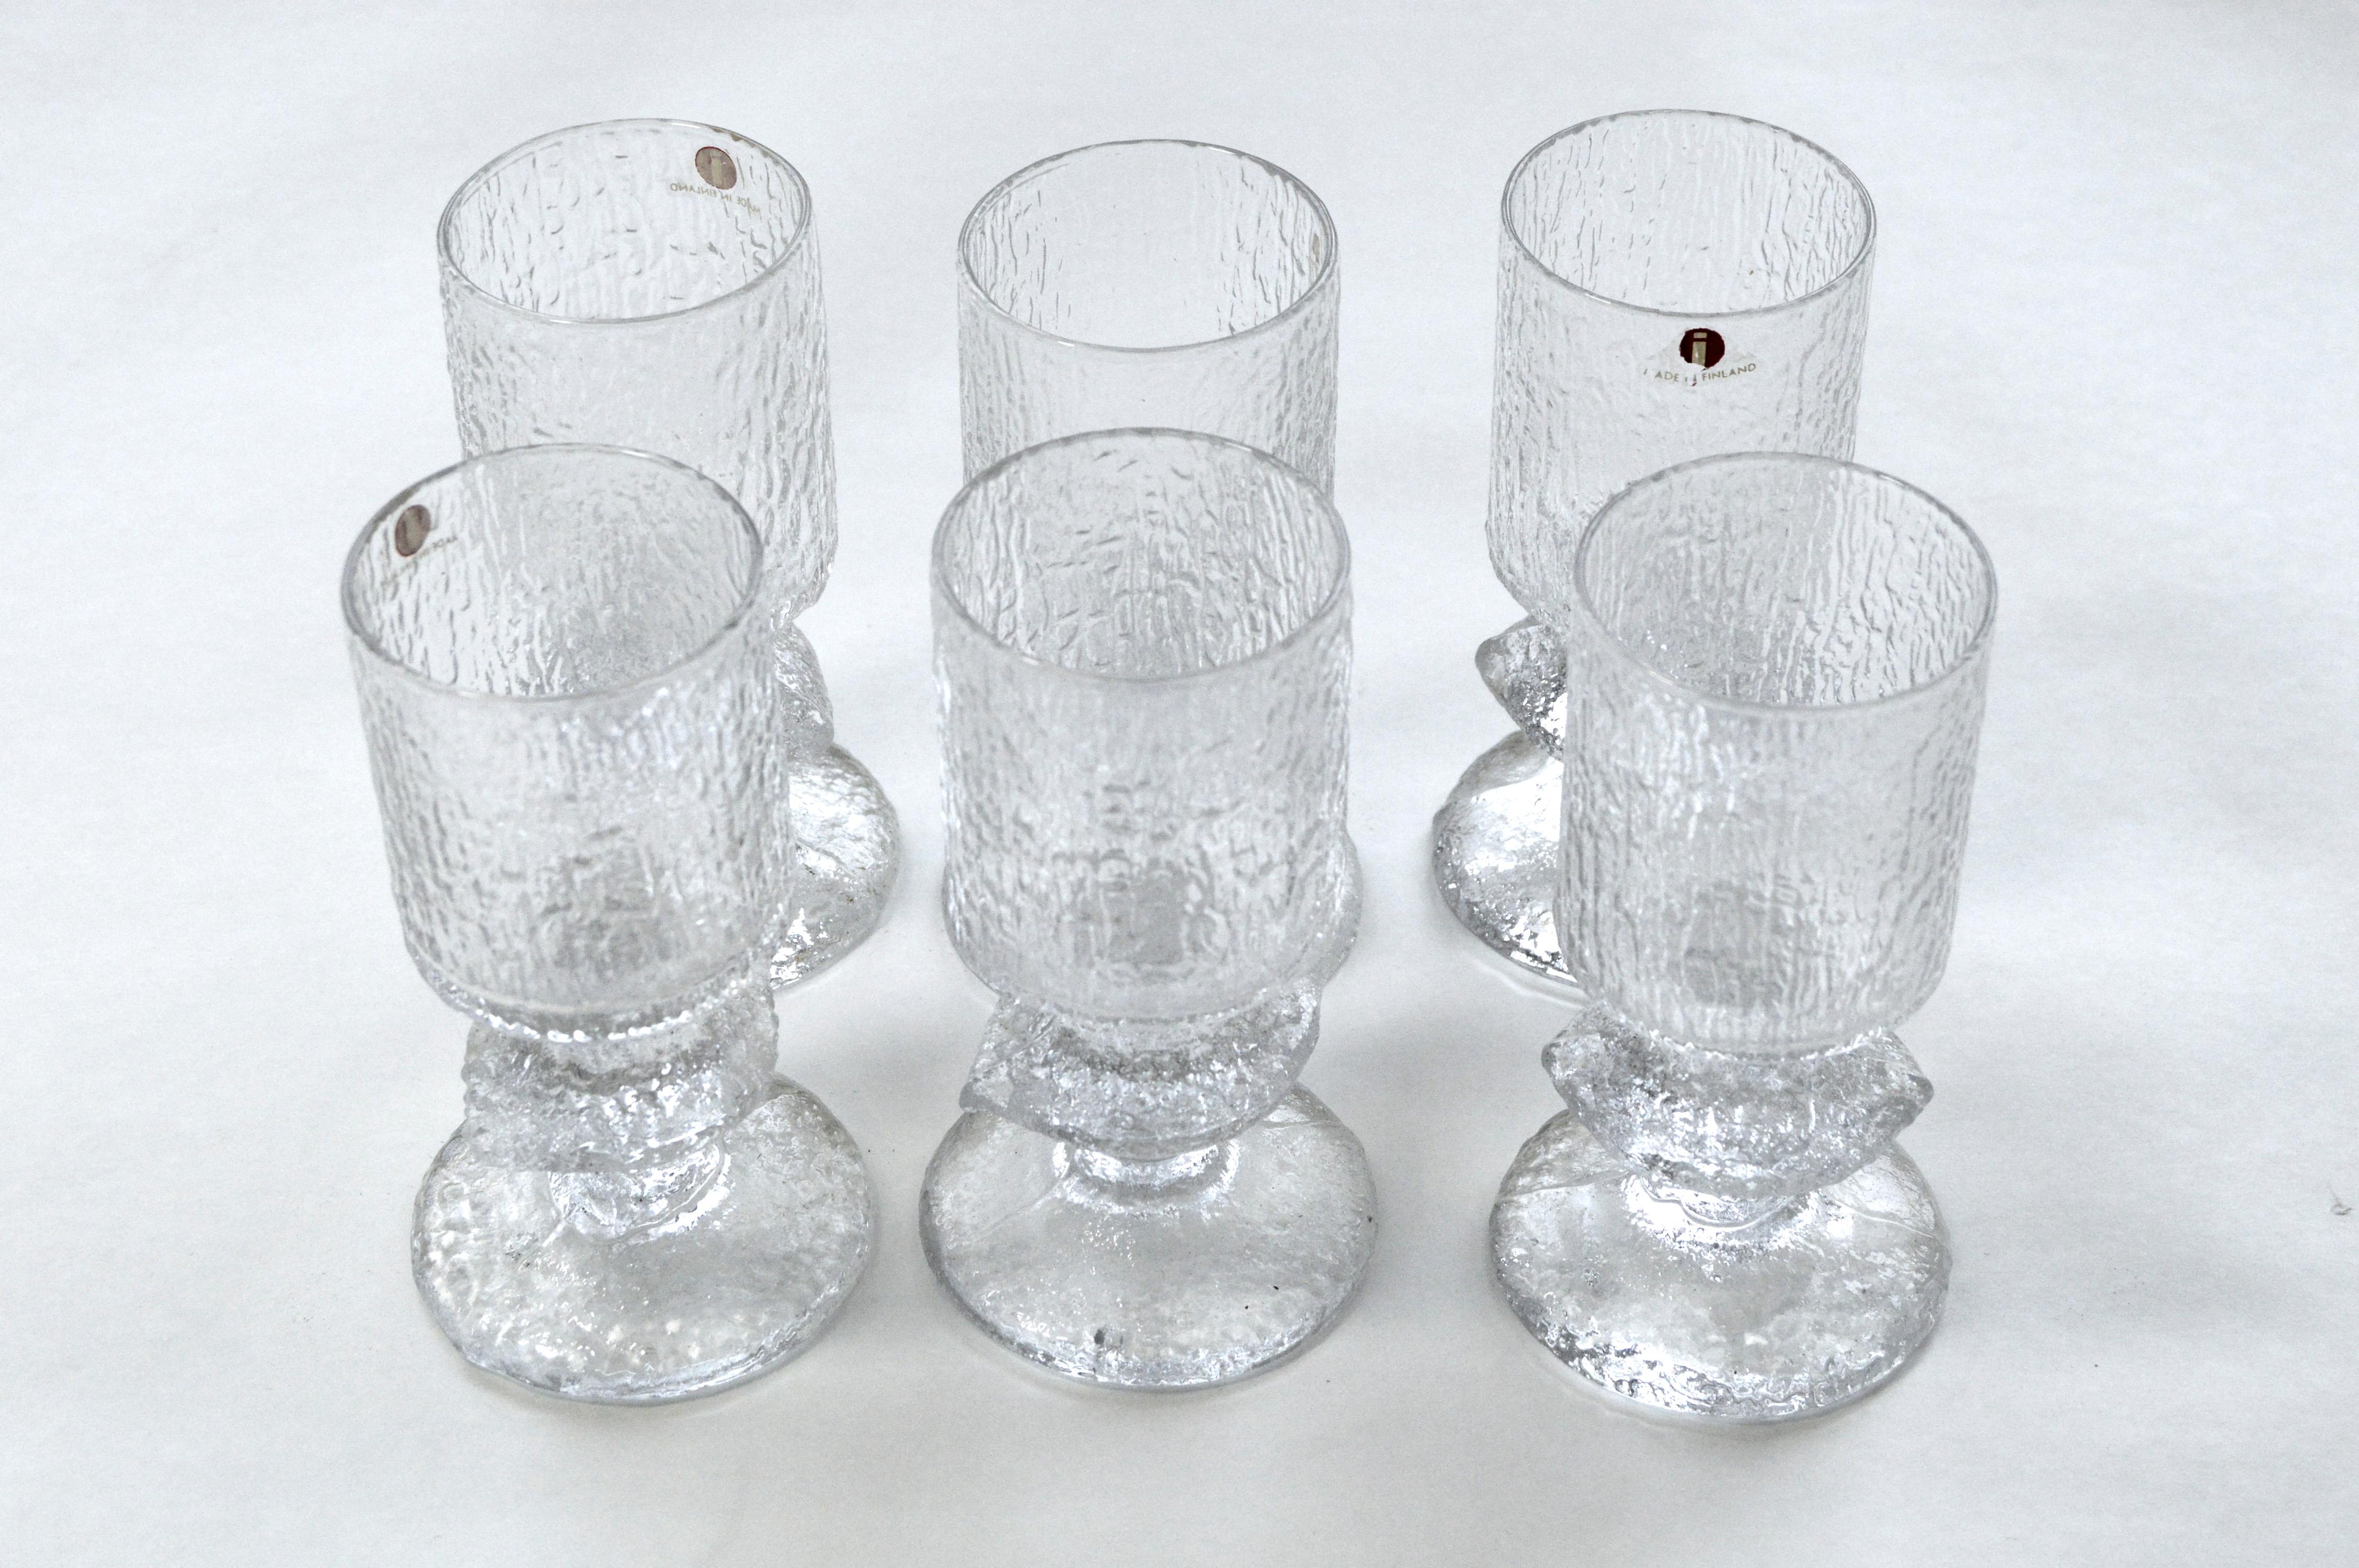 Gläserset bestehend aus sechs großen Weingläsern:: sechs kleinen Aperitifgläsern und zwei Kerzenleuchtern. Die passenden Stücke haben eine raue Oberfläche:: die dem Glas eine eisähnliche Textur verleiht. Die seit 1967 hergestellten Gläser sind zu